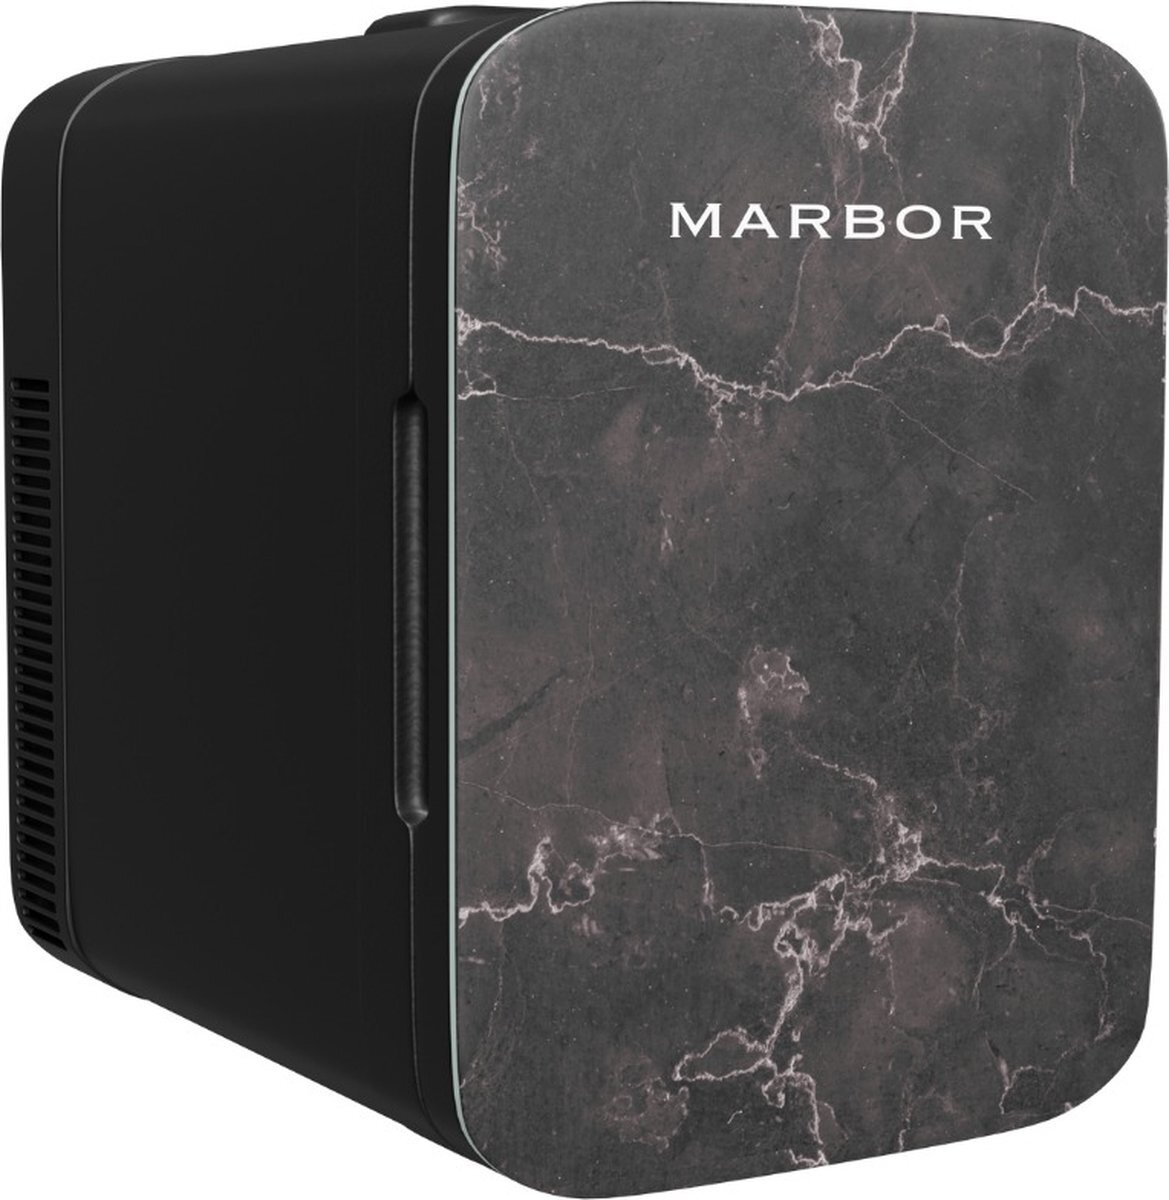 Marbor FW210 Pro - 10L Mini Fridge - Voor skincare, eten, drinken en medicijnen - 10 Liter - Black Edition